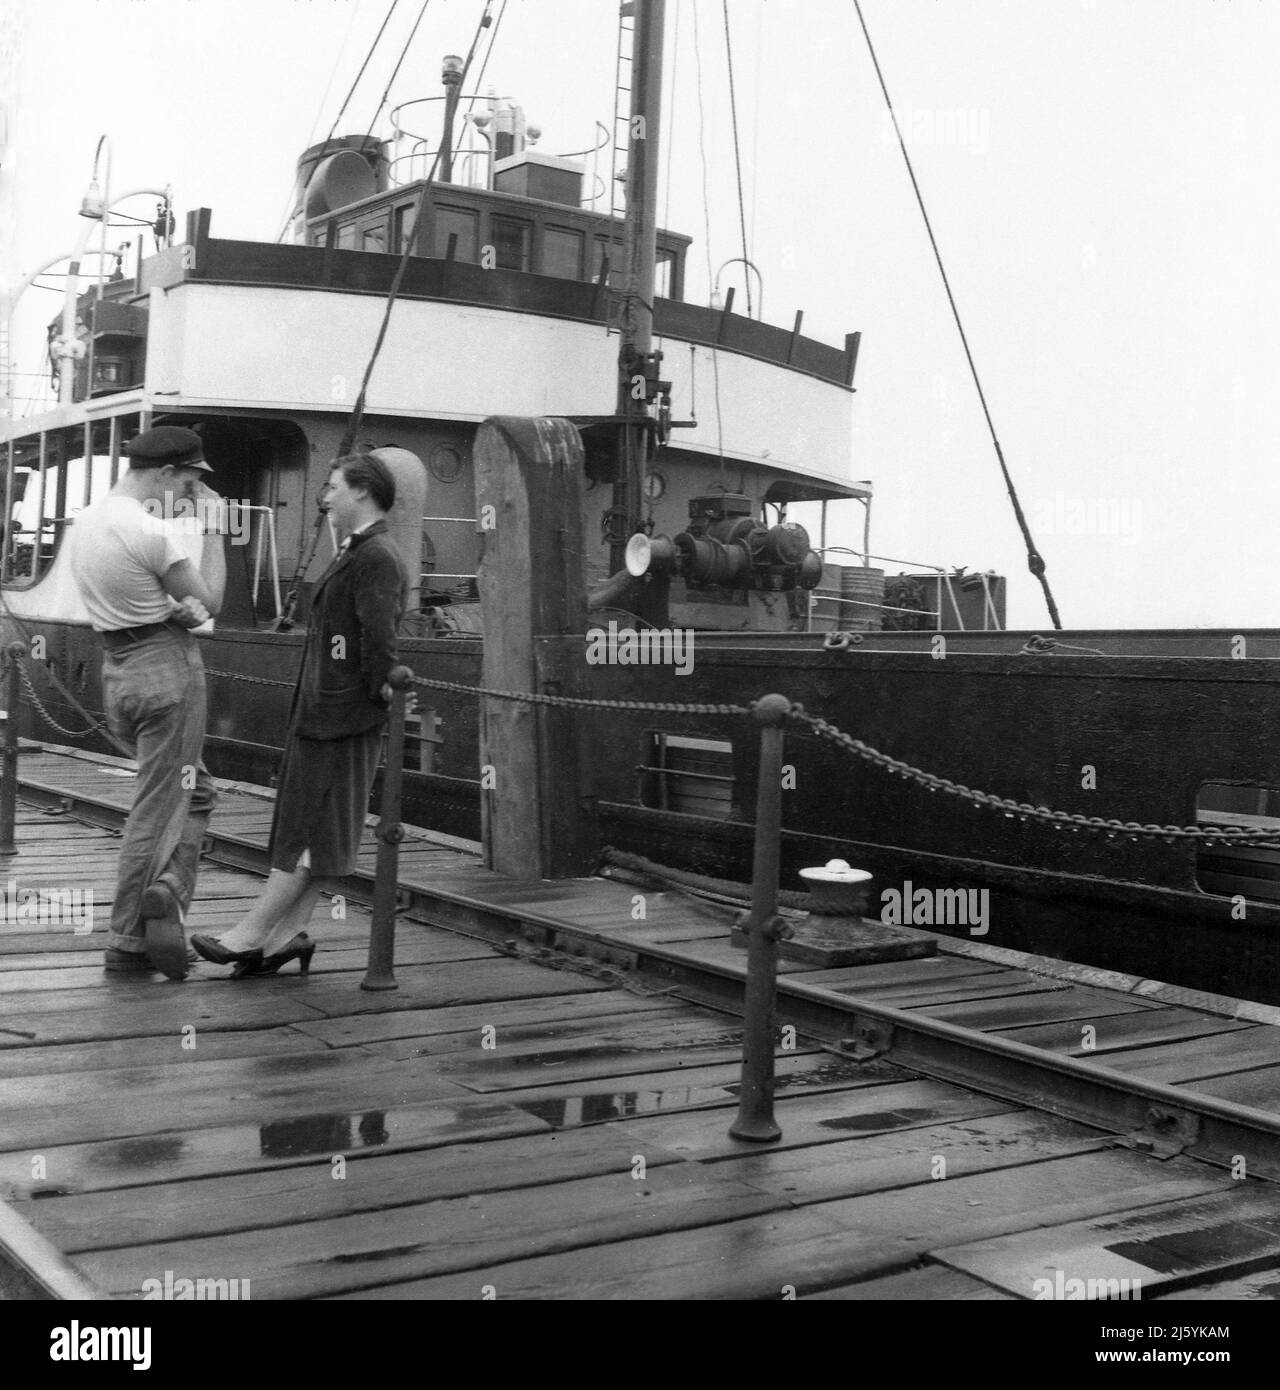 1960, historisch, stehend auf einem feuchten Holzkai, ein junger Mann, der in T-Shirt und Mütze mit einer jungen Frau spricht, Birkenhead Docks, Mersey, Liverpool, England, VEREINIGTES KÖNIGREICH. Das Frachtschiff Seatern ist vertäut. Stockfoto